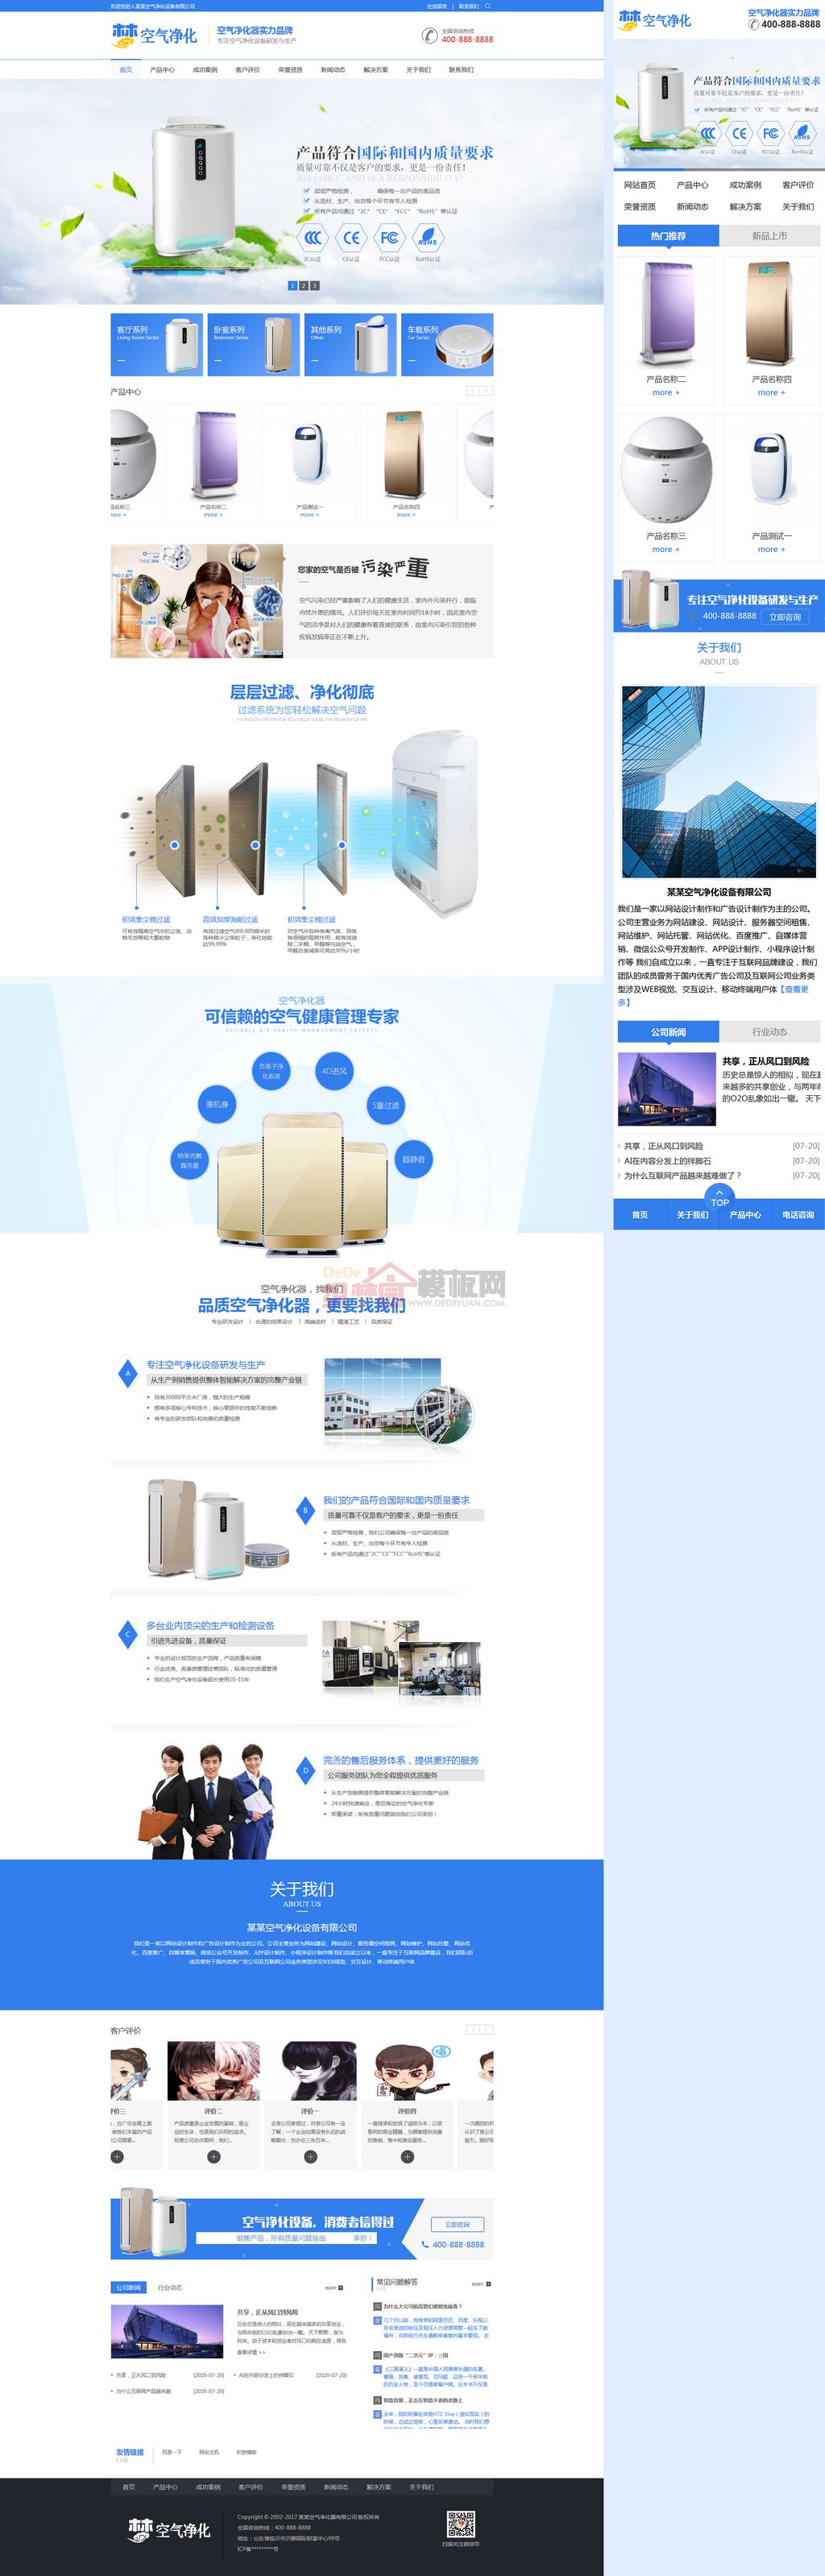 营销型蓝色车载空气净化器设备网站制作_网站建设模板演示图